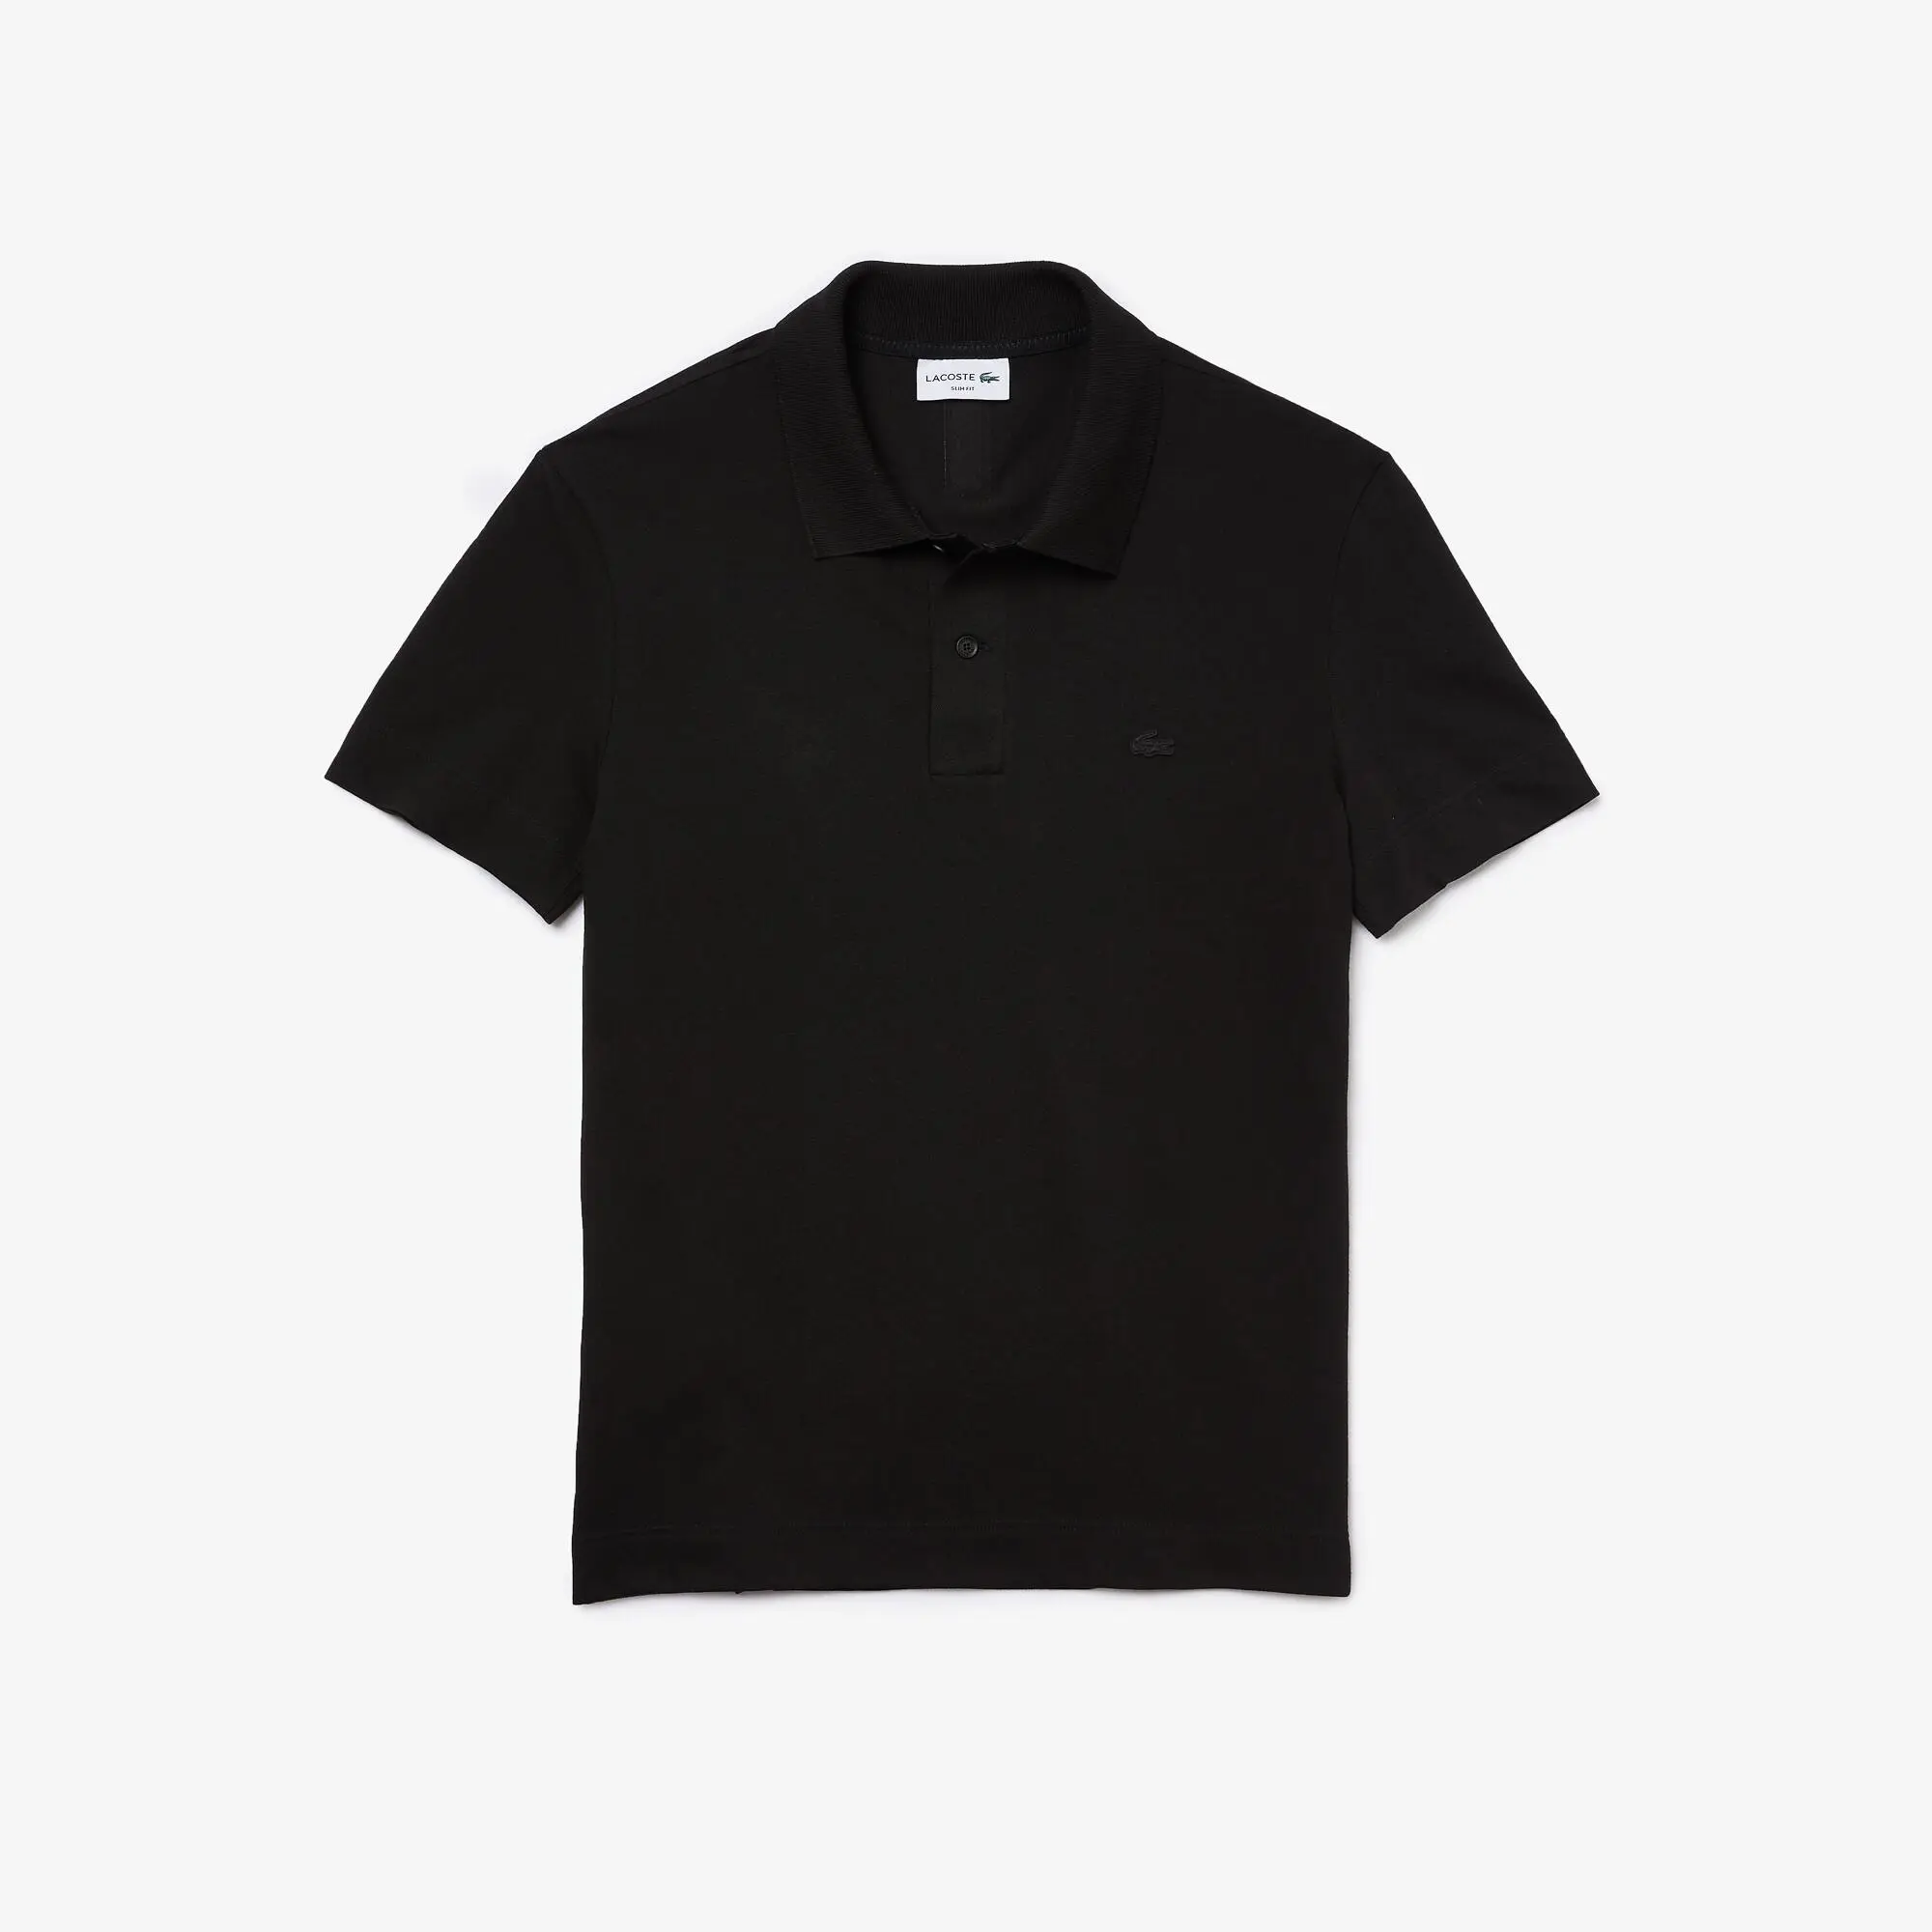 Lacoste Men's Lacoste Slim Fit Organic Stretch Cotton Piqué Polo Shirt. 2